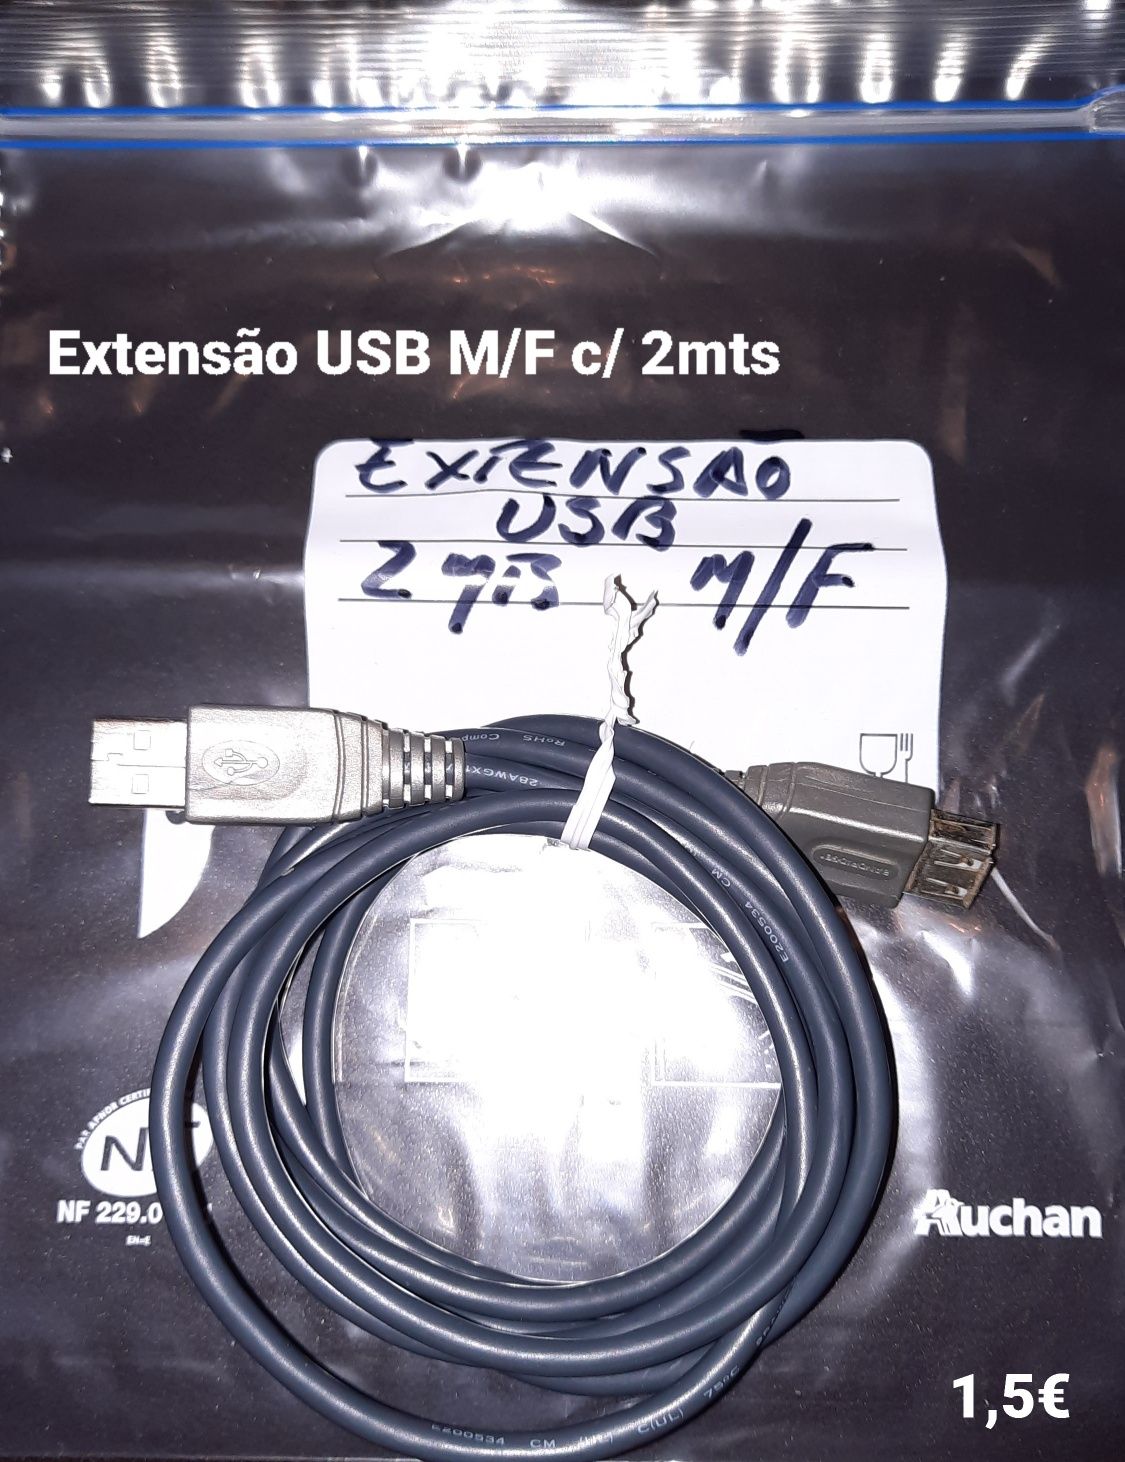 Cabos de Som, USBs, 21P